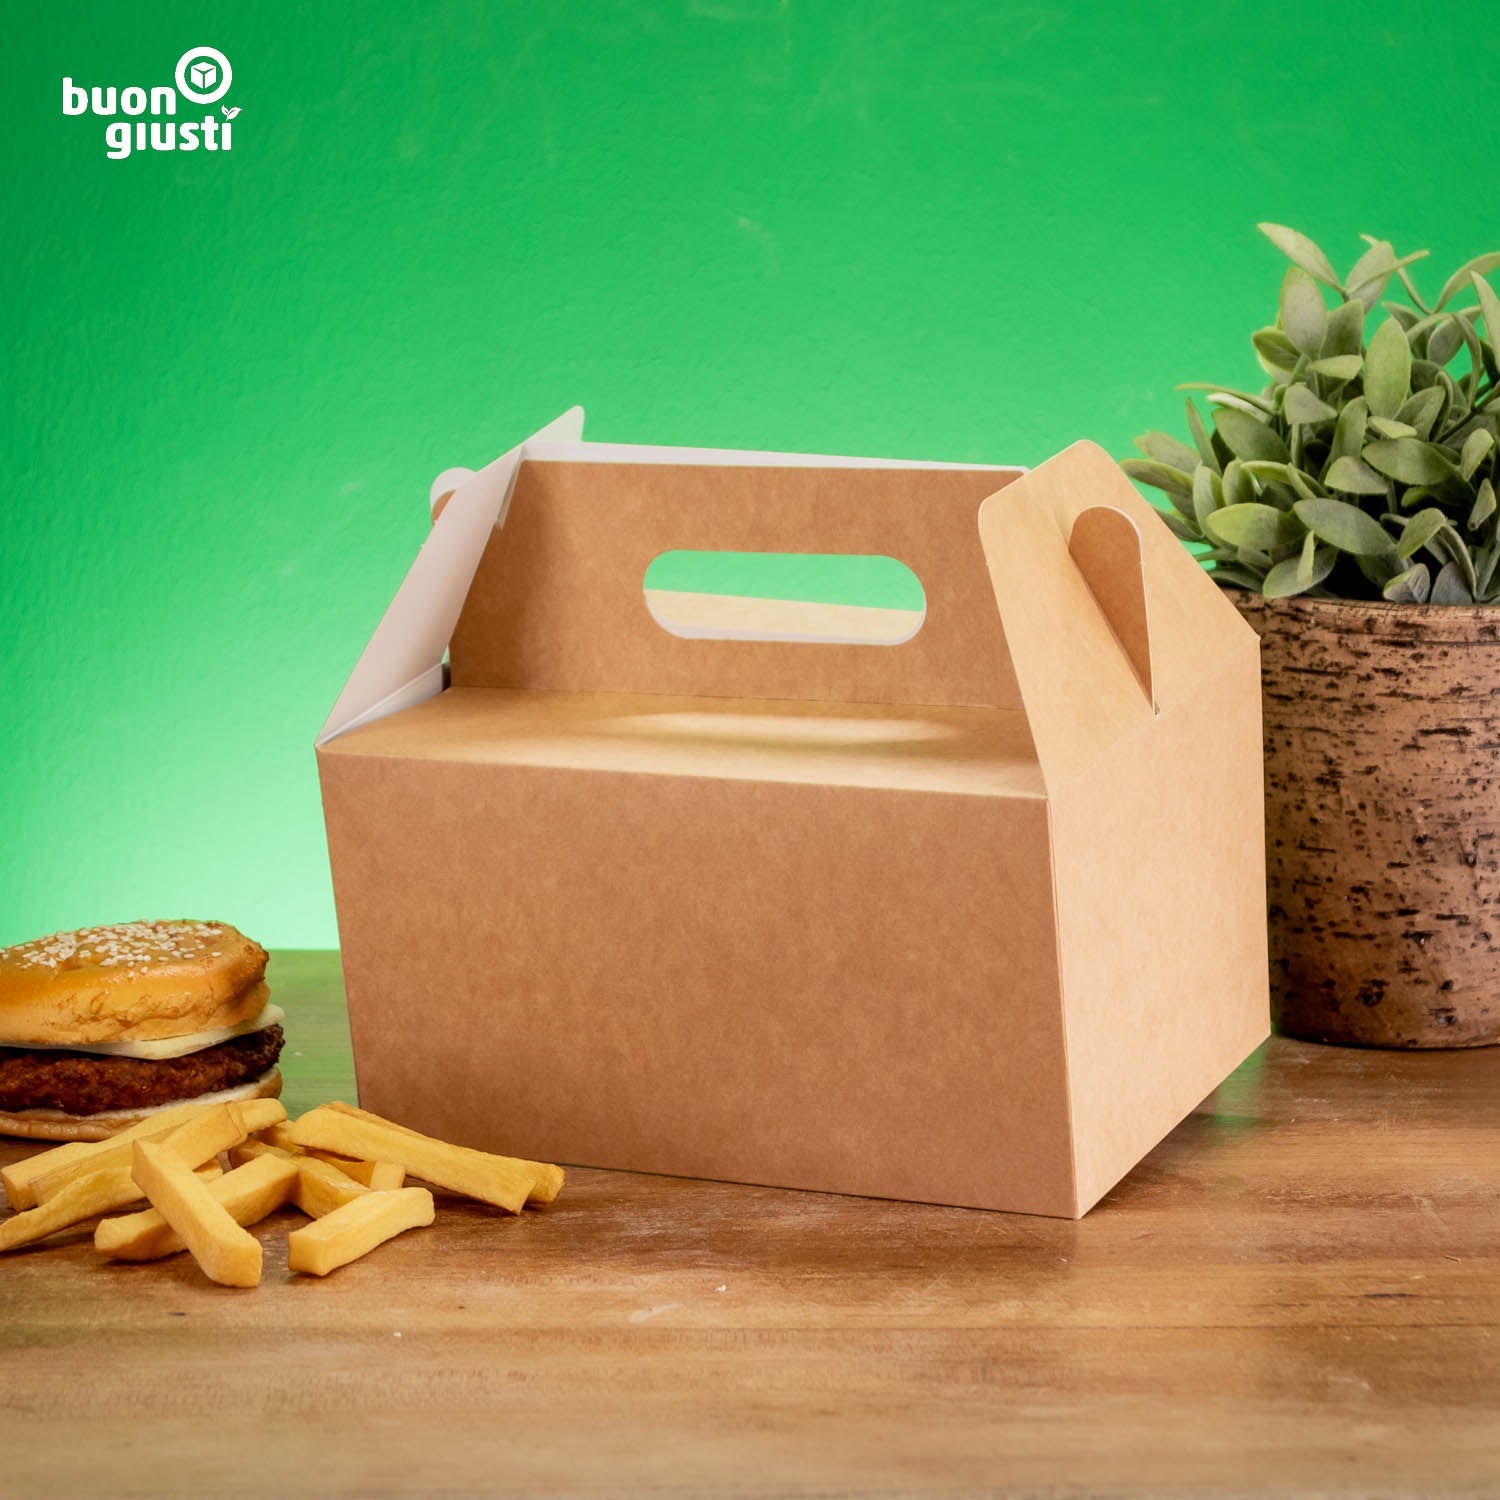 200x Lunchbox mit Griff 21x15x11 cm faltbar Food Box Kraftkarton braun - Burger - buongiusti AG - personalisiert ab 100 Stück